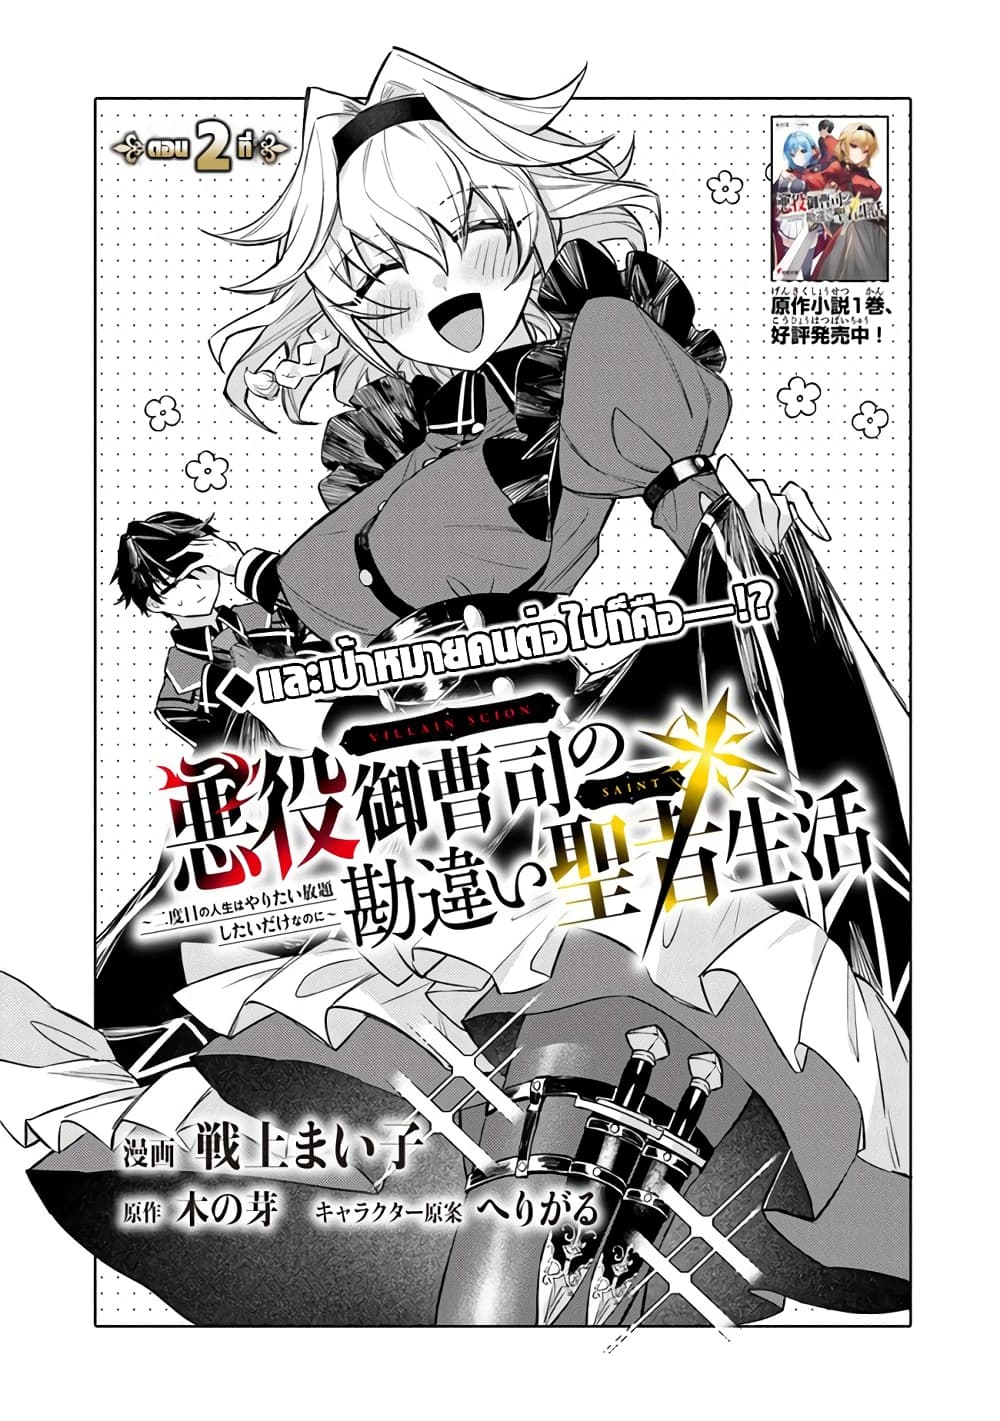 Akuyaku Onzoushi no Kanchigai Seija Seikatsu: Nidome no Jinsei wa Yaritai  Houdai Shitai dake na no ni (Light Novel) Manga